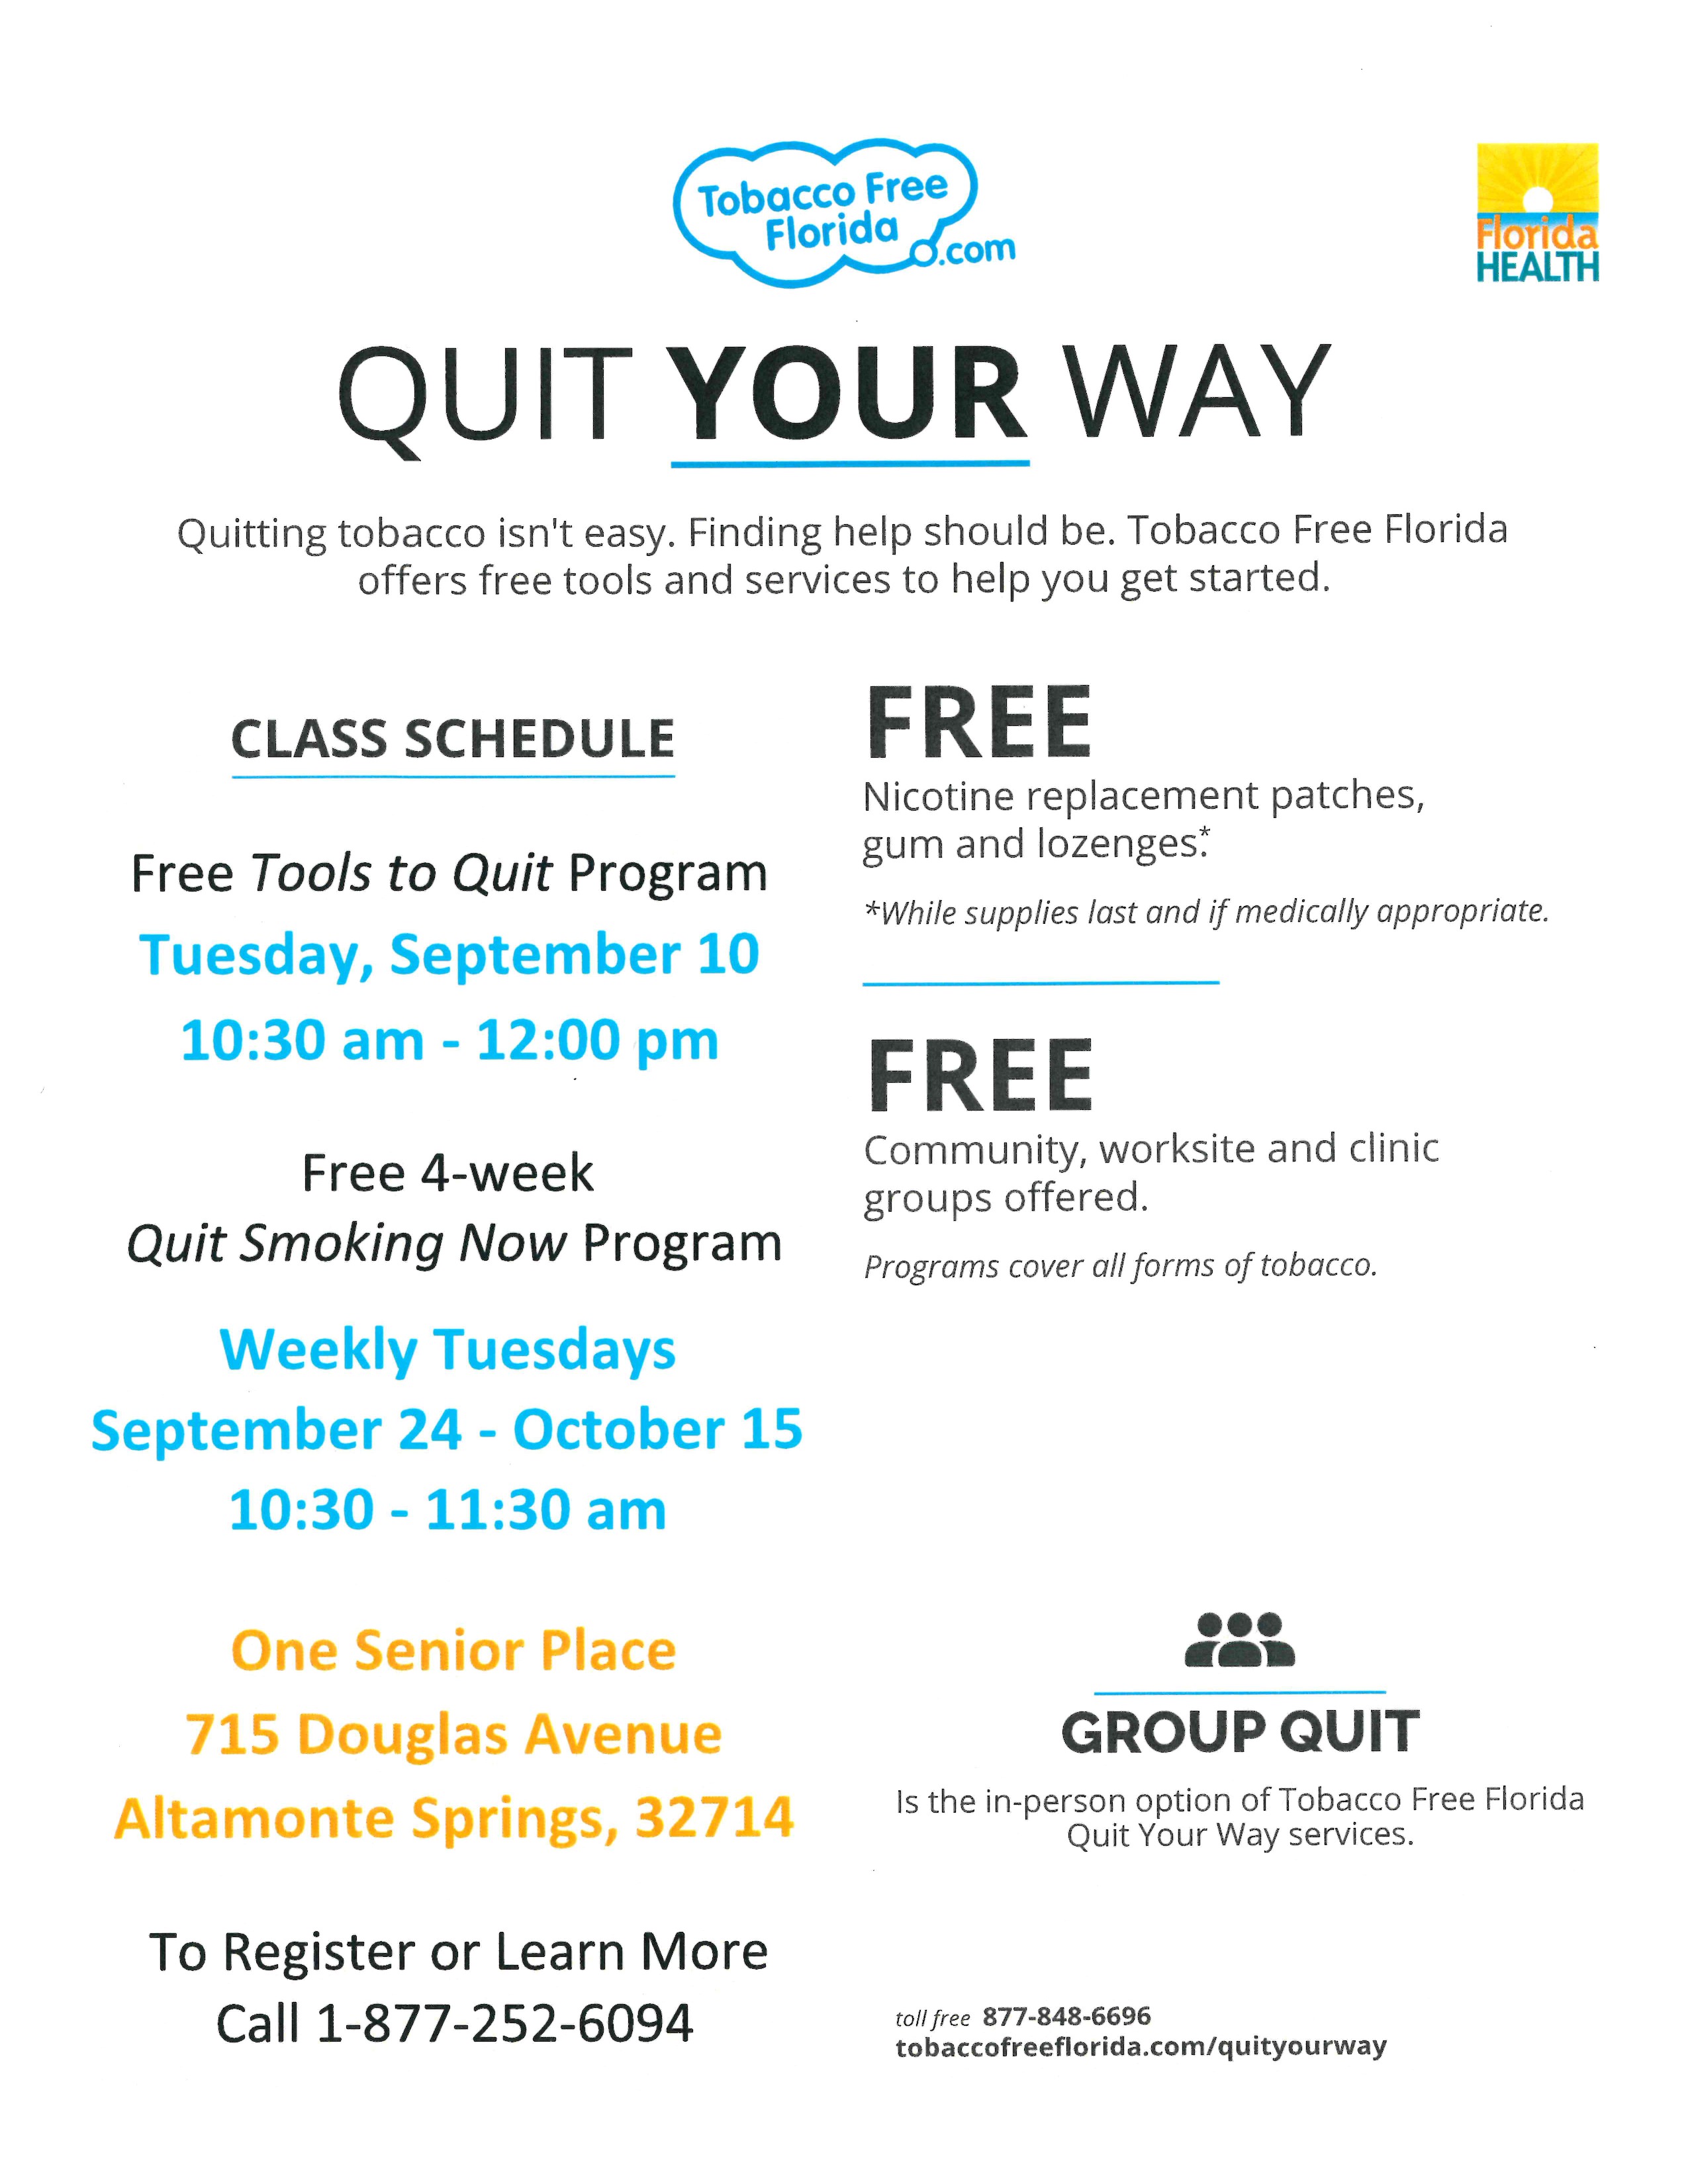 FREE 5-week Quit Smoking Now  Program